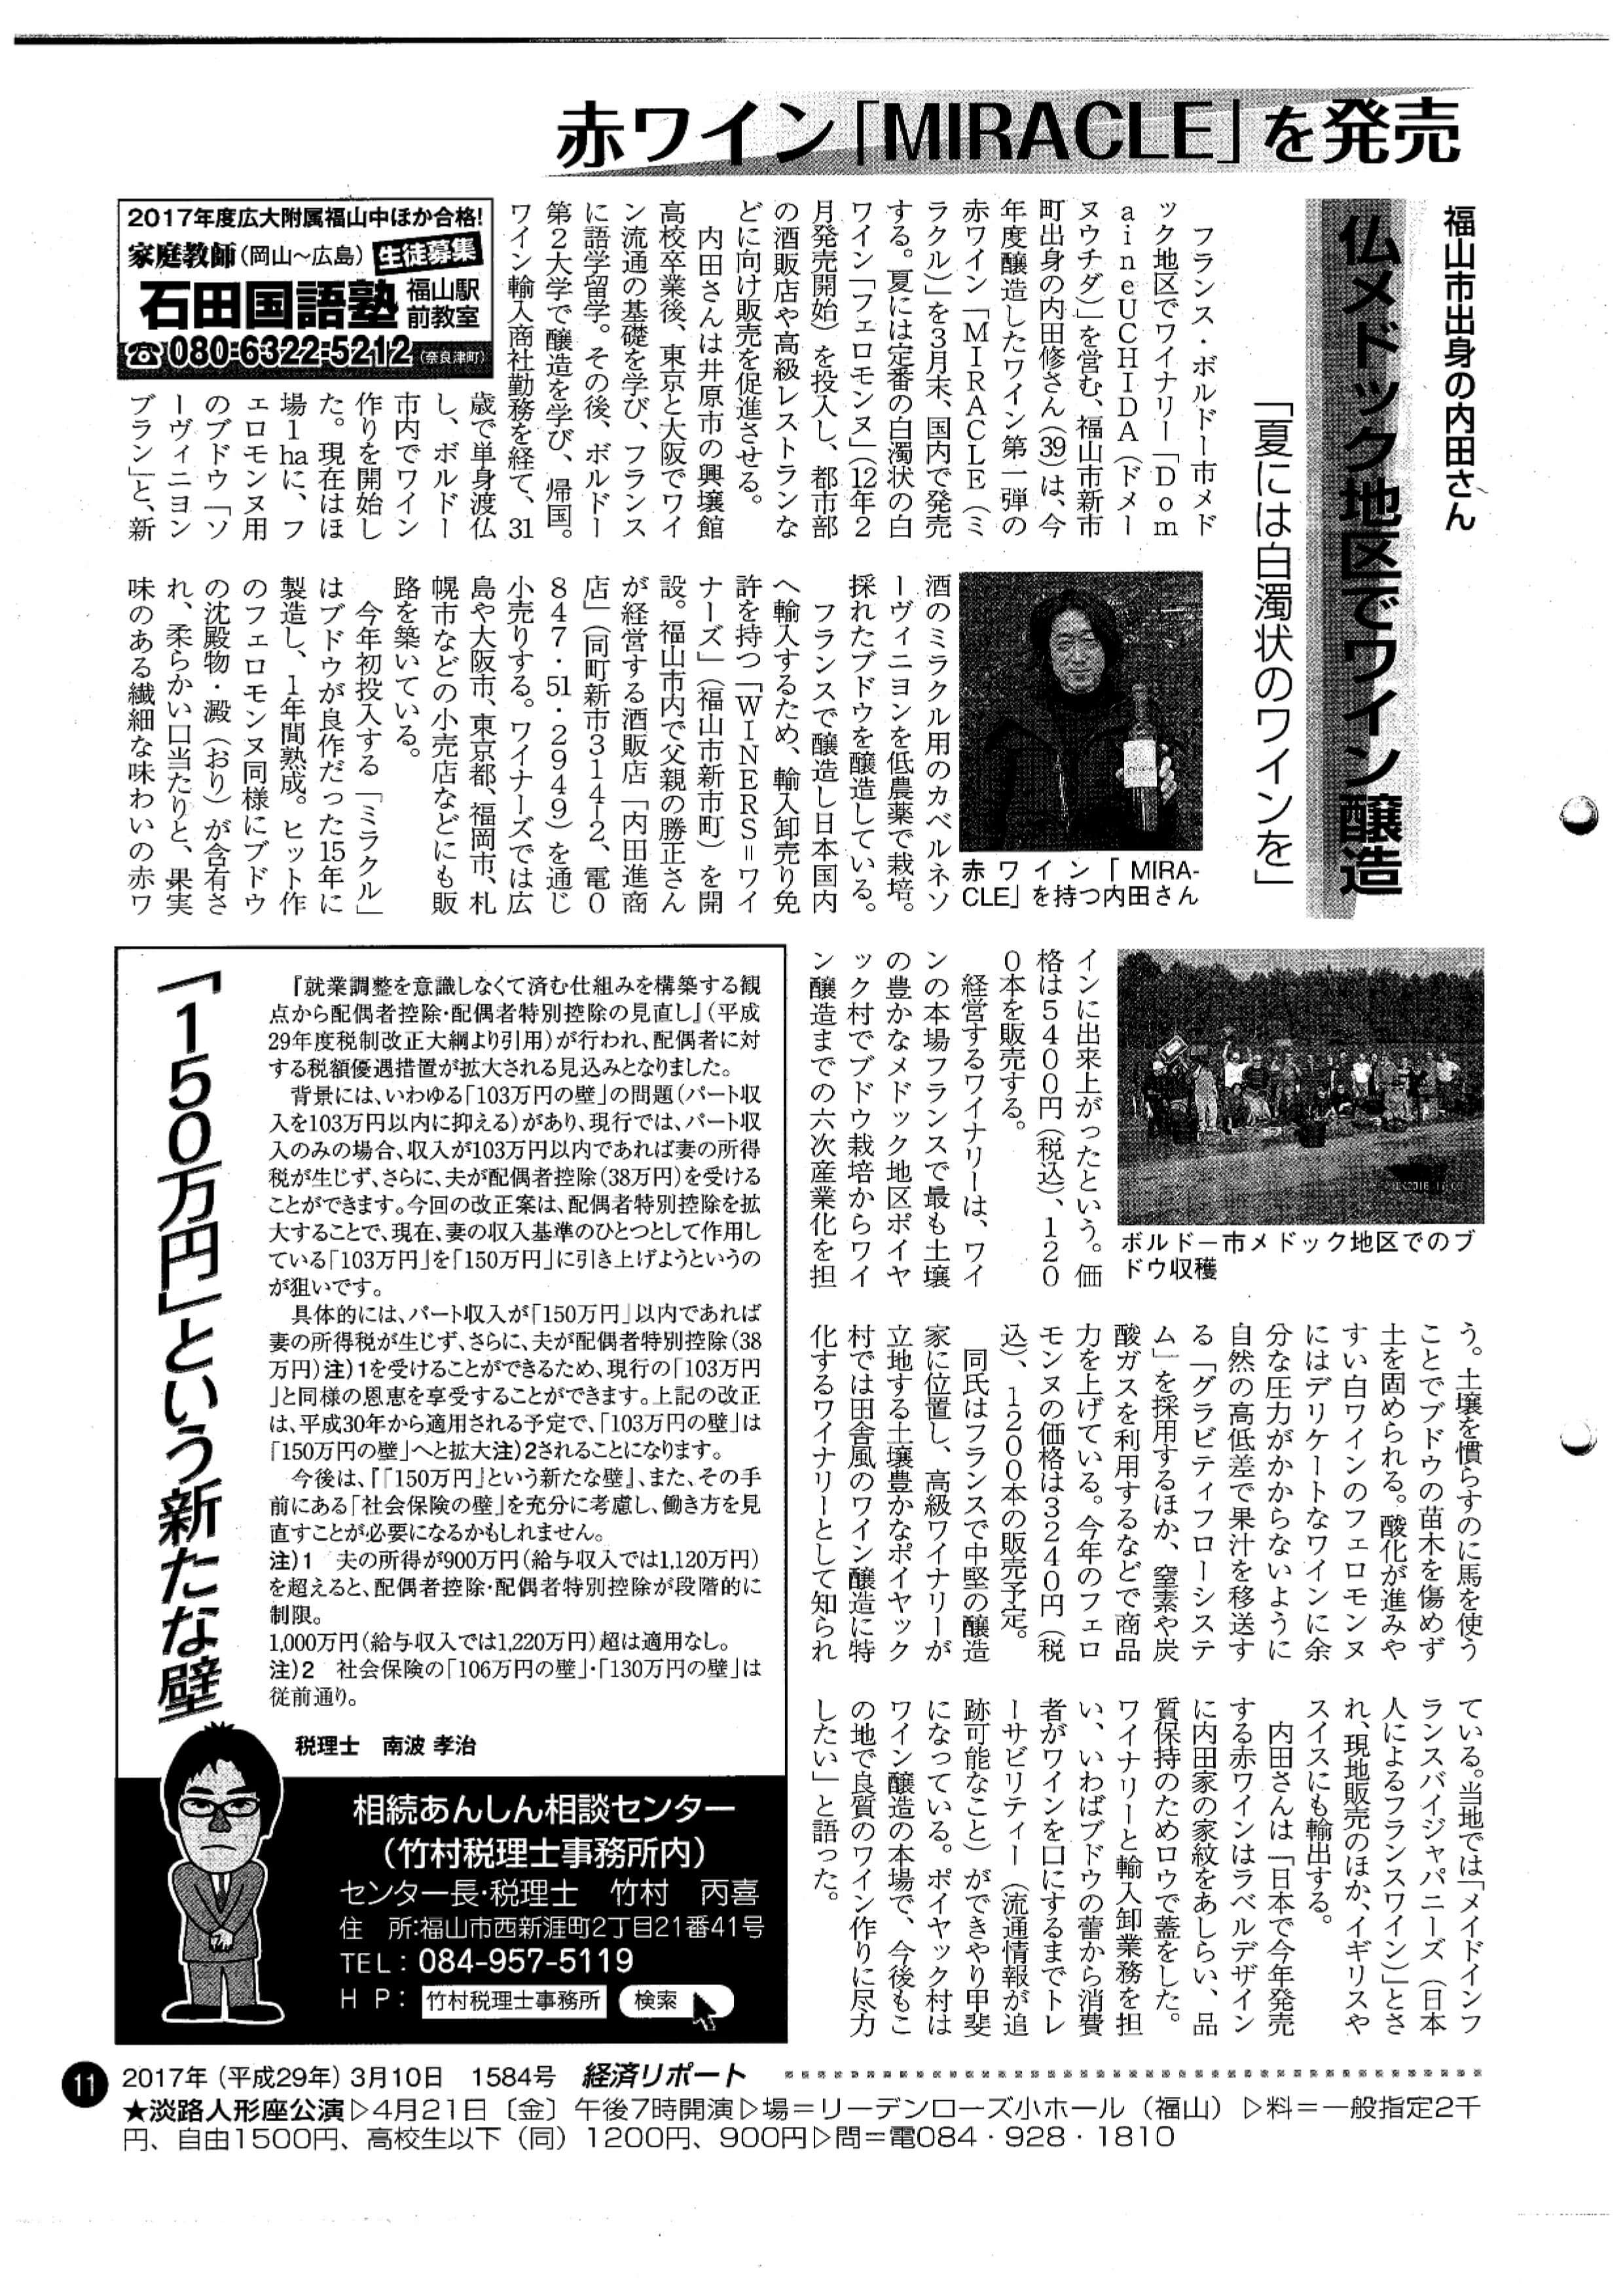 経済リポート　『１５０万円という新たな壁』（平成29年3月10日号11頁） (2)